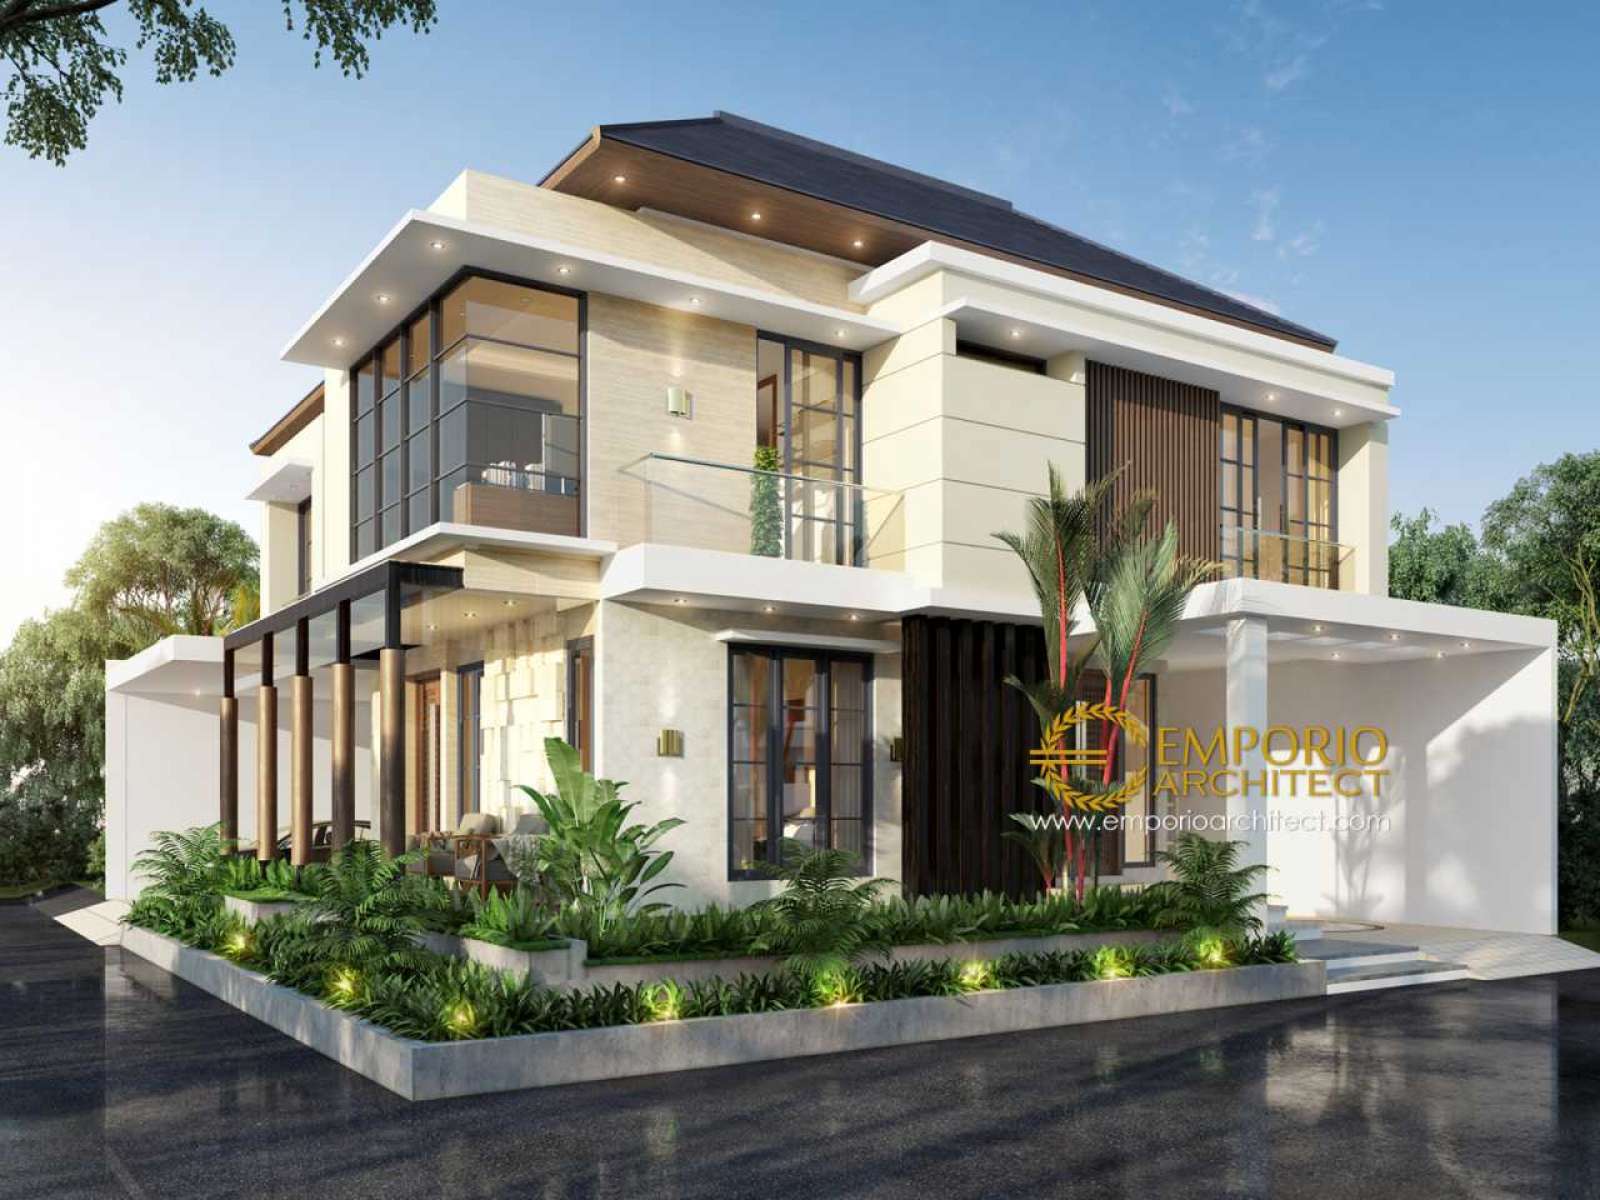 Desain Rumah Modern Bali - GAMBAR RUMAH BALI MODERN 1 LANTAI 12 x 15 | SANGGAR TEKNIK / Jendela kaca hanya dipisahkan oleh tiang penyangga dan pintu rumah.